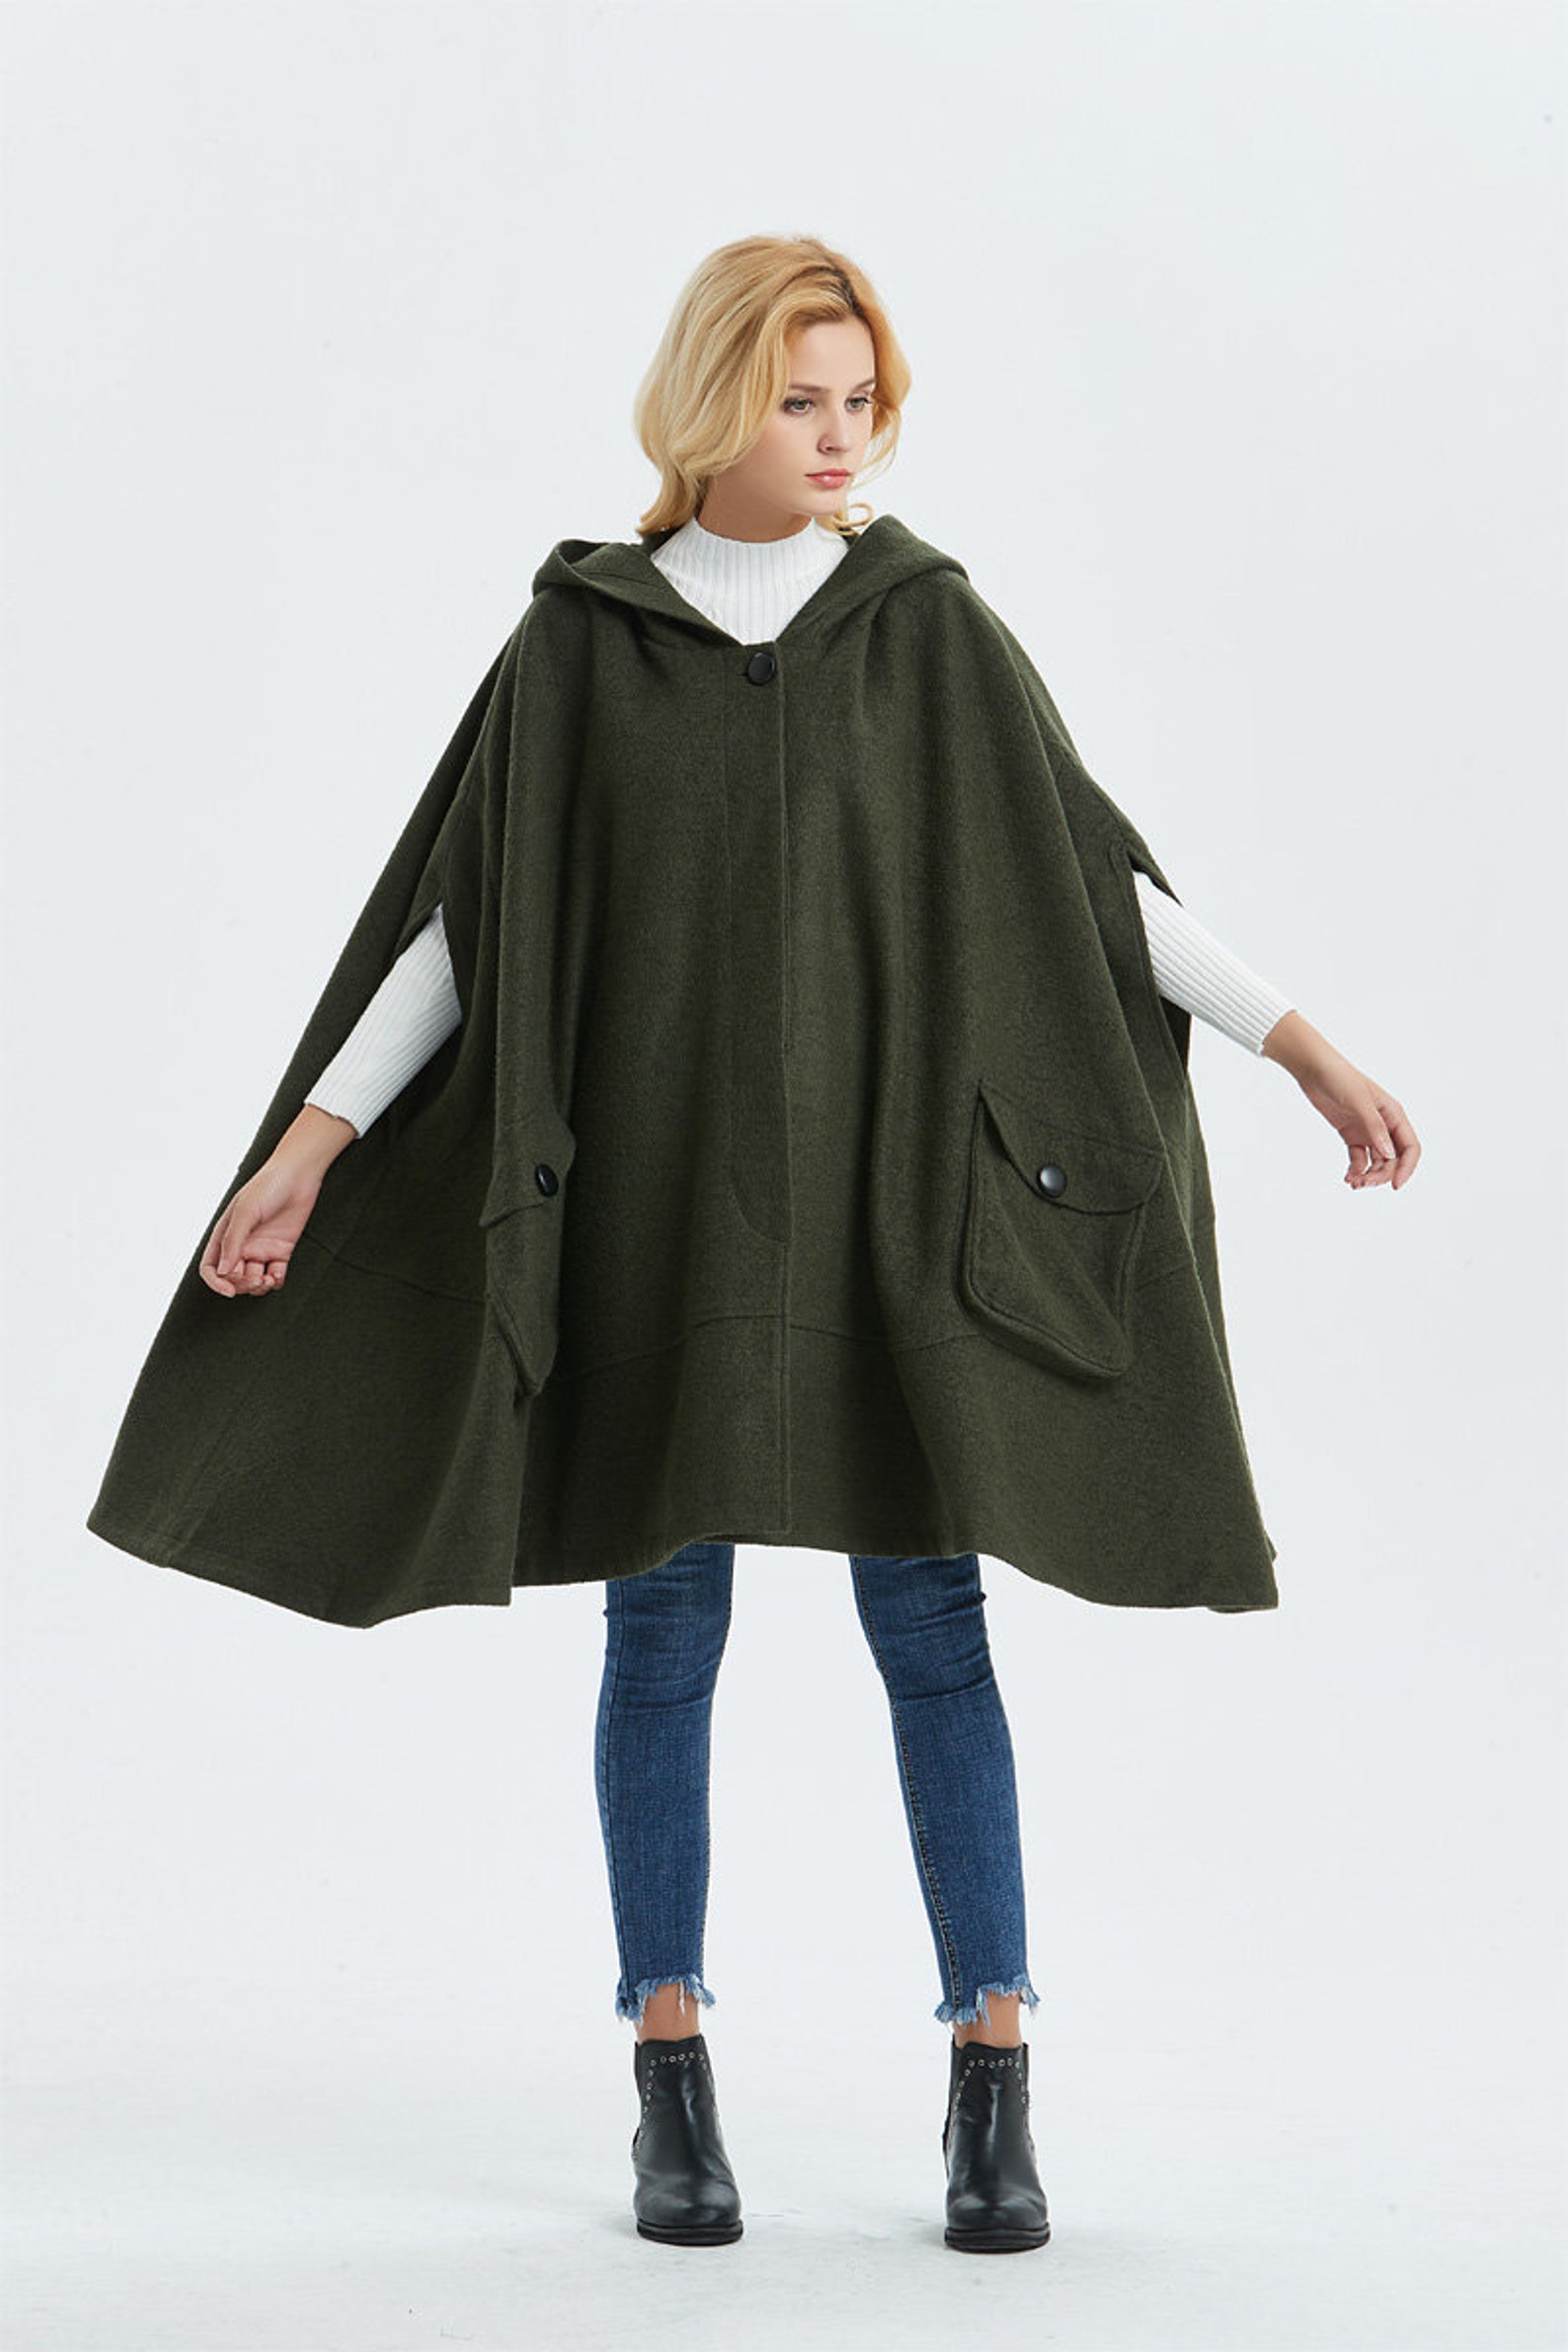 Green Winter Wool Cloak With Hood Women Long Hooded Wool Cape | Etsy